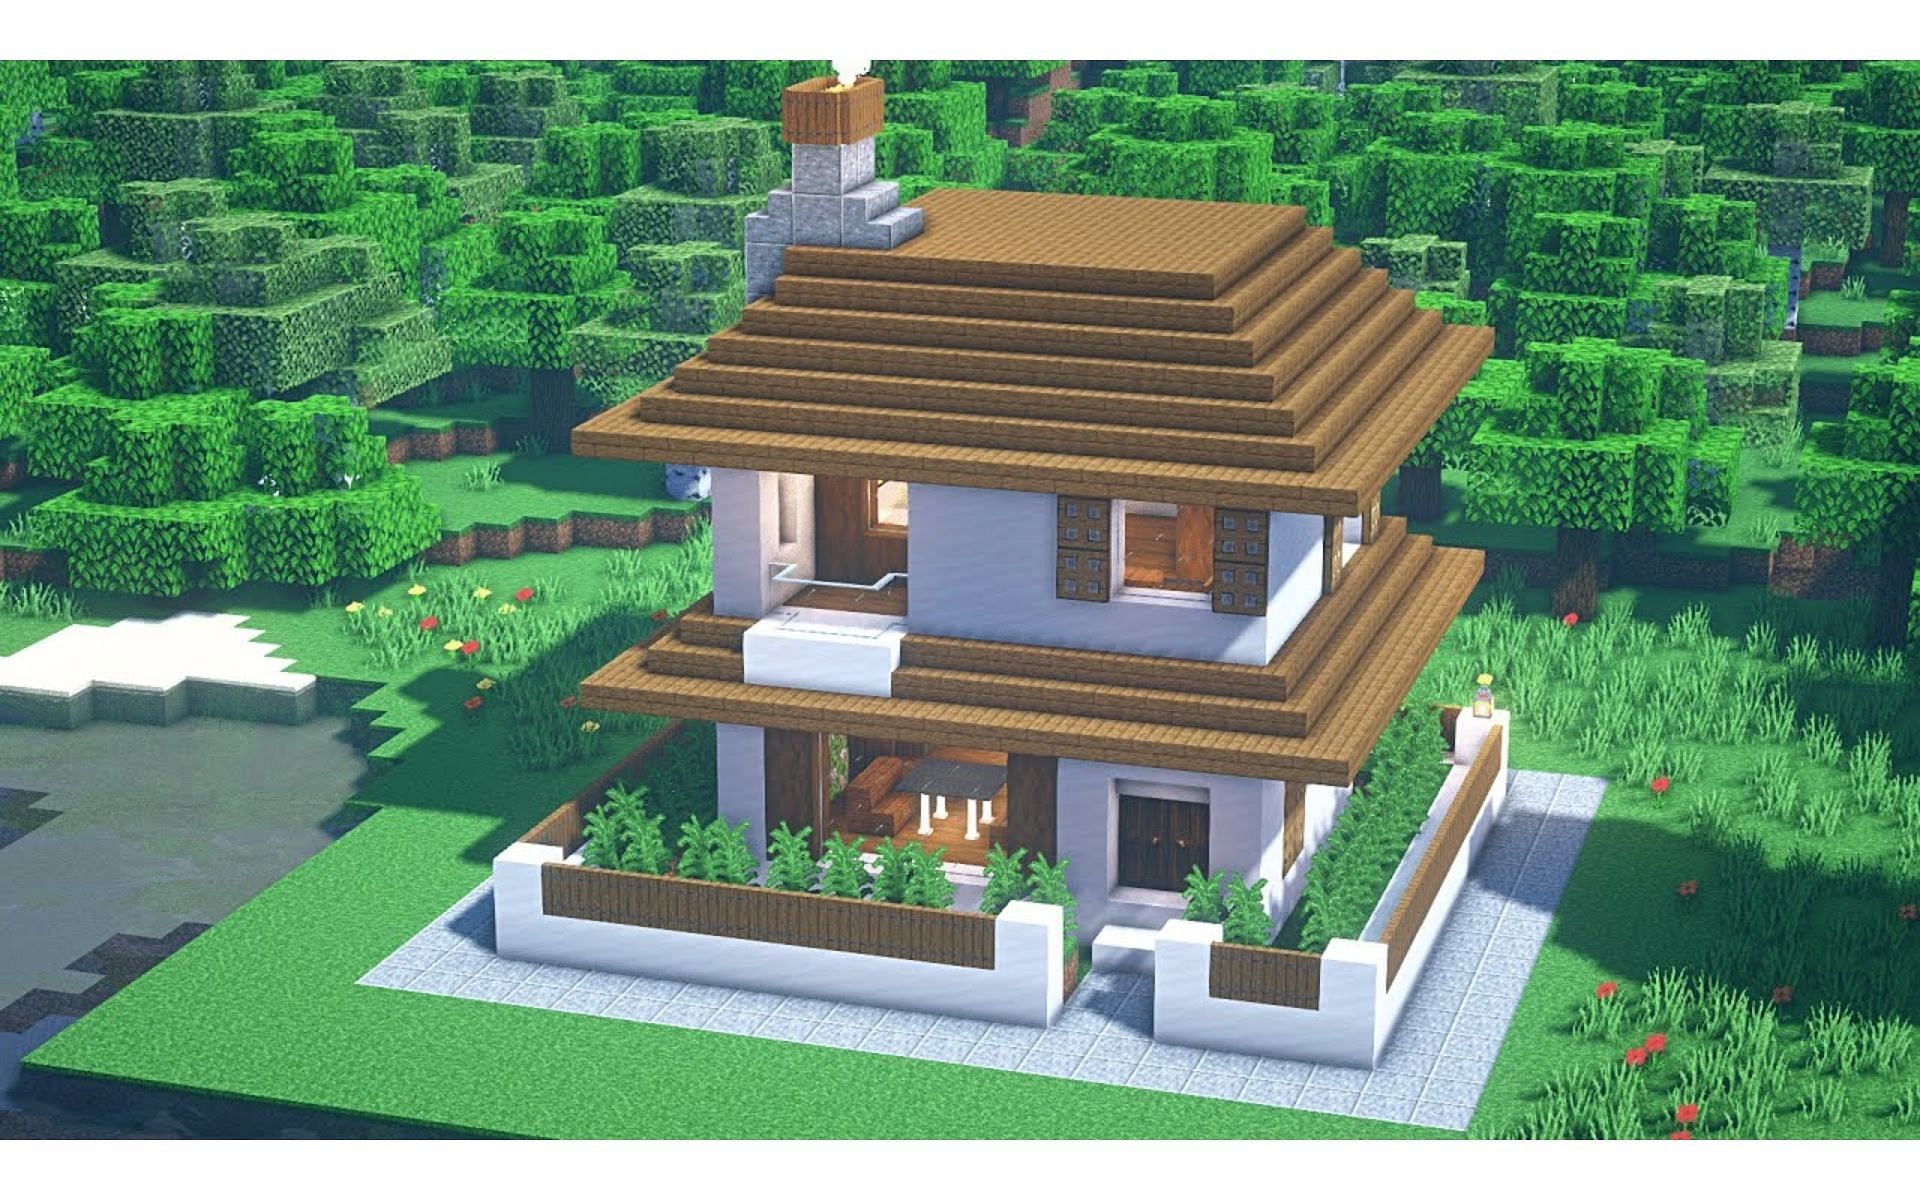 Двухэтажный дом может дать игрокам место для всех их вещей (Изображение взято с YouTube/Ponycraft)